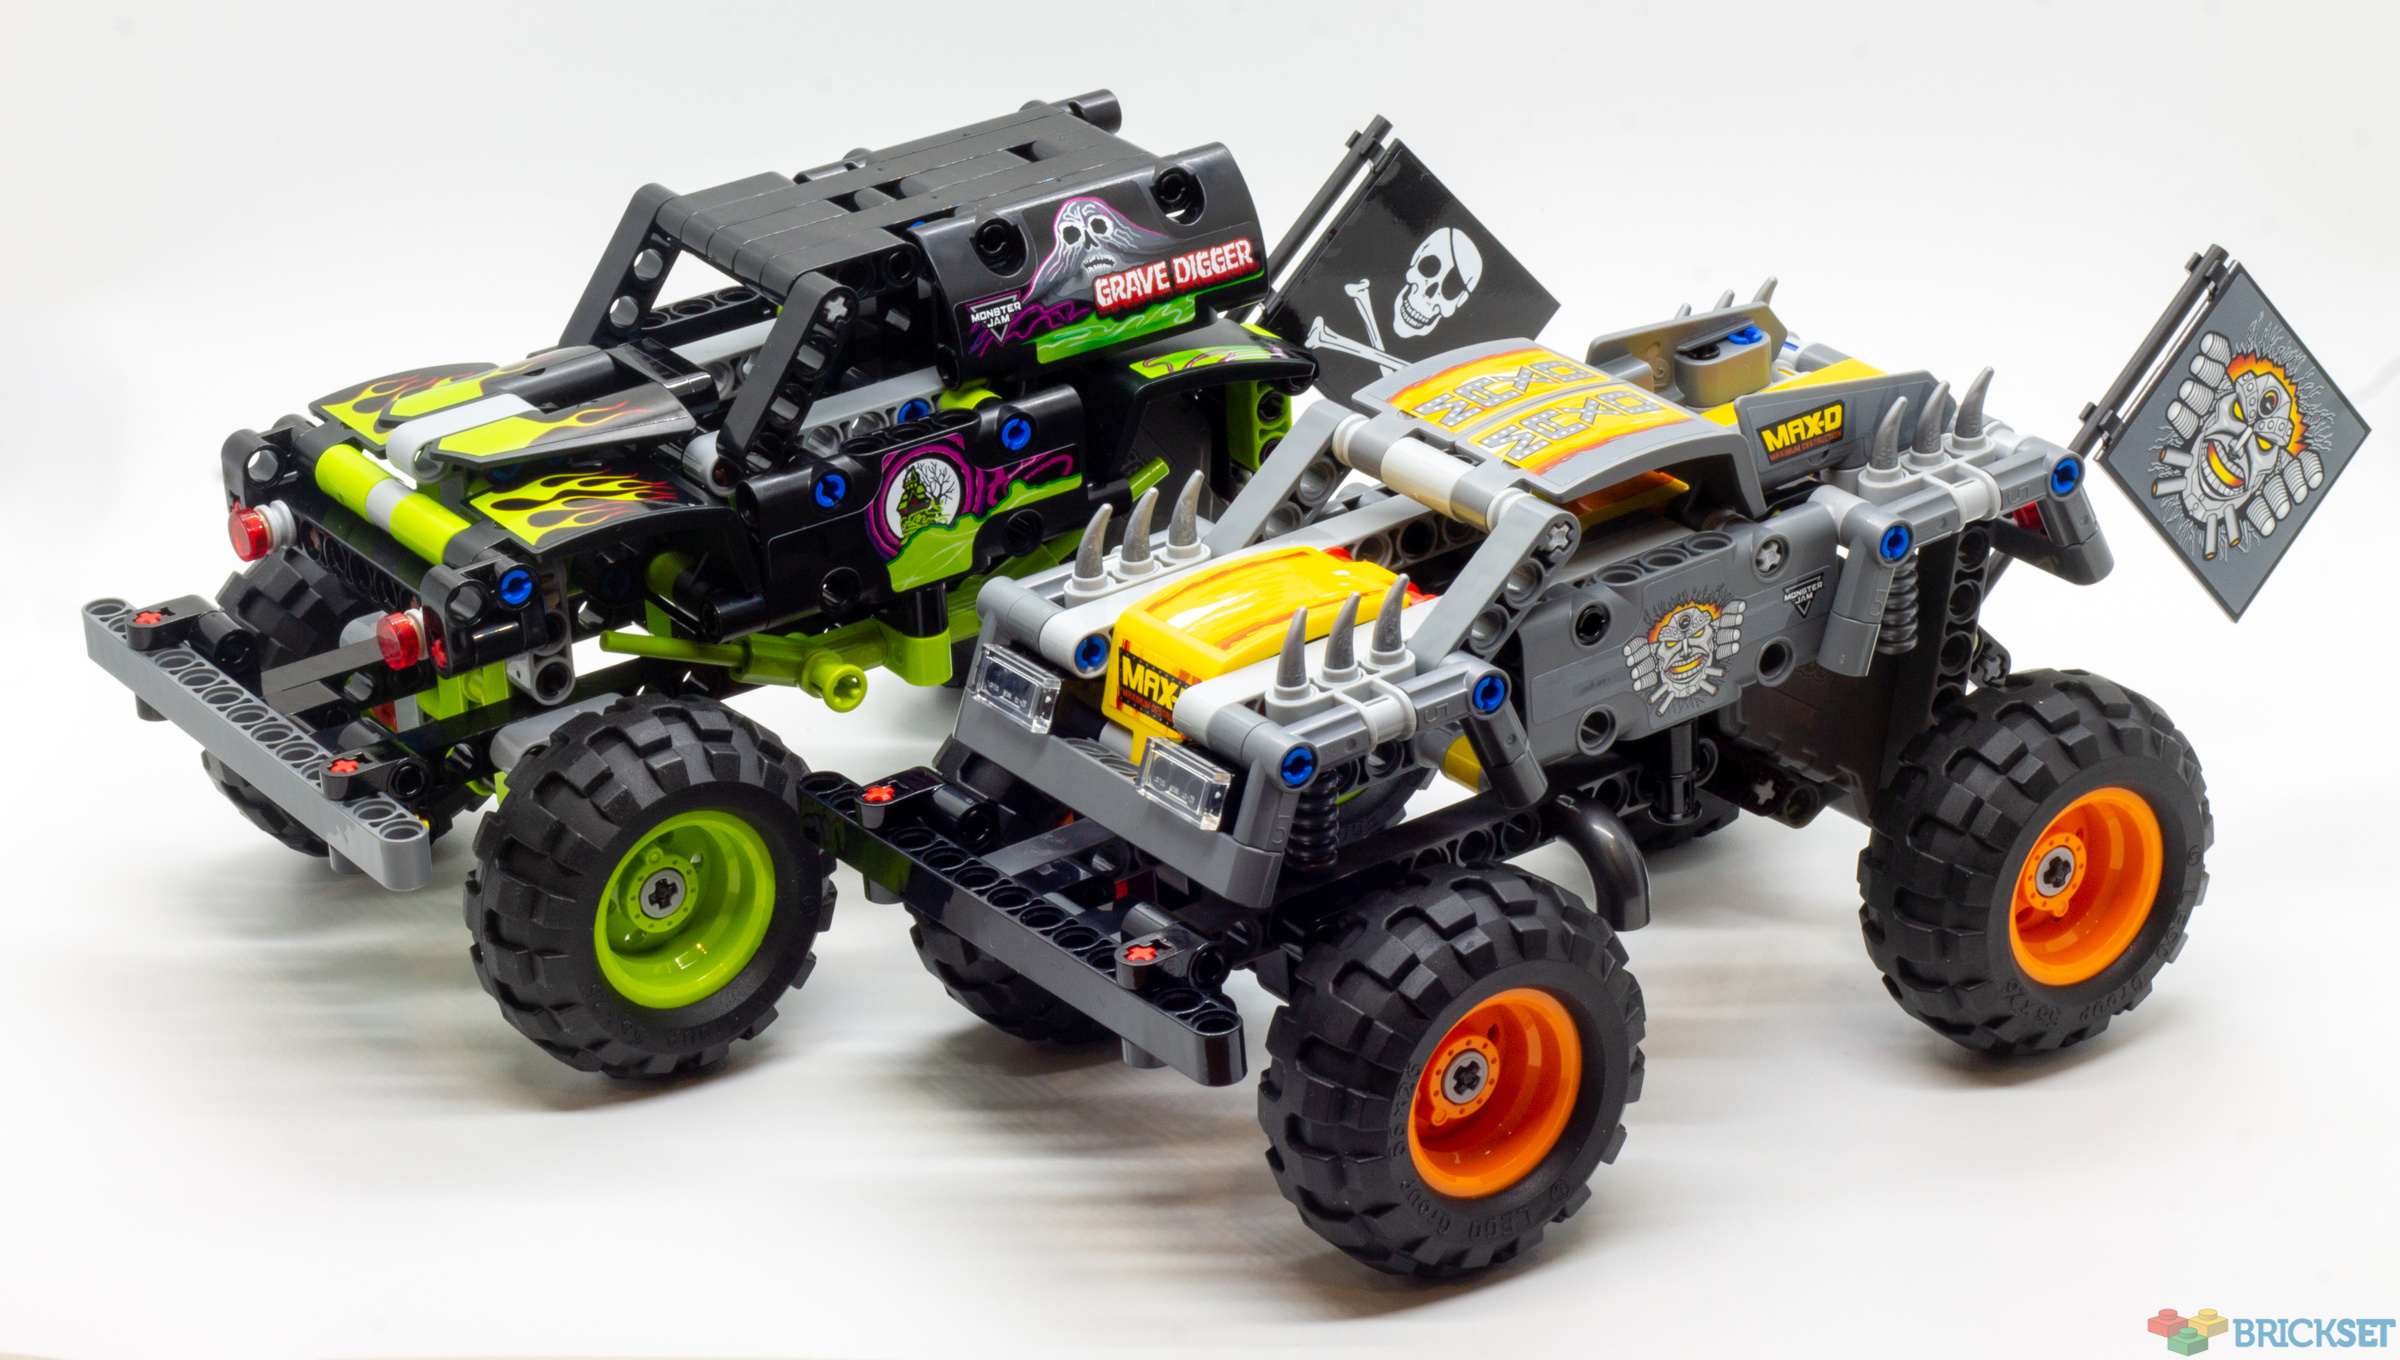 LEGO Monster Jam Trucks review